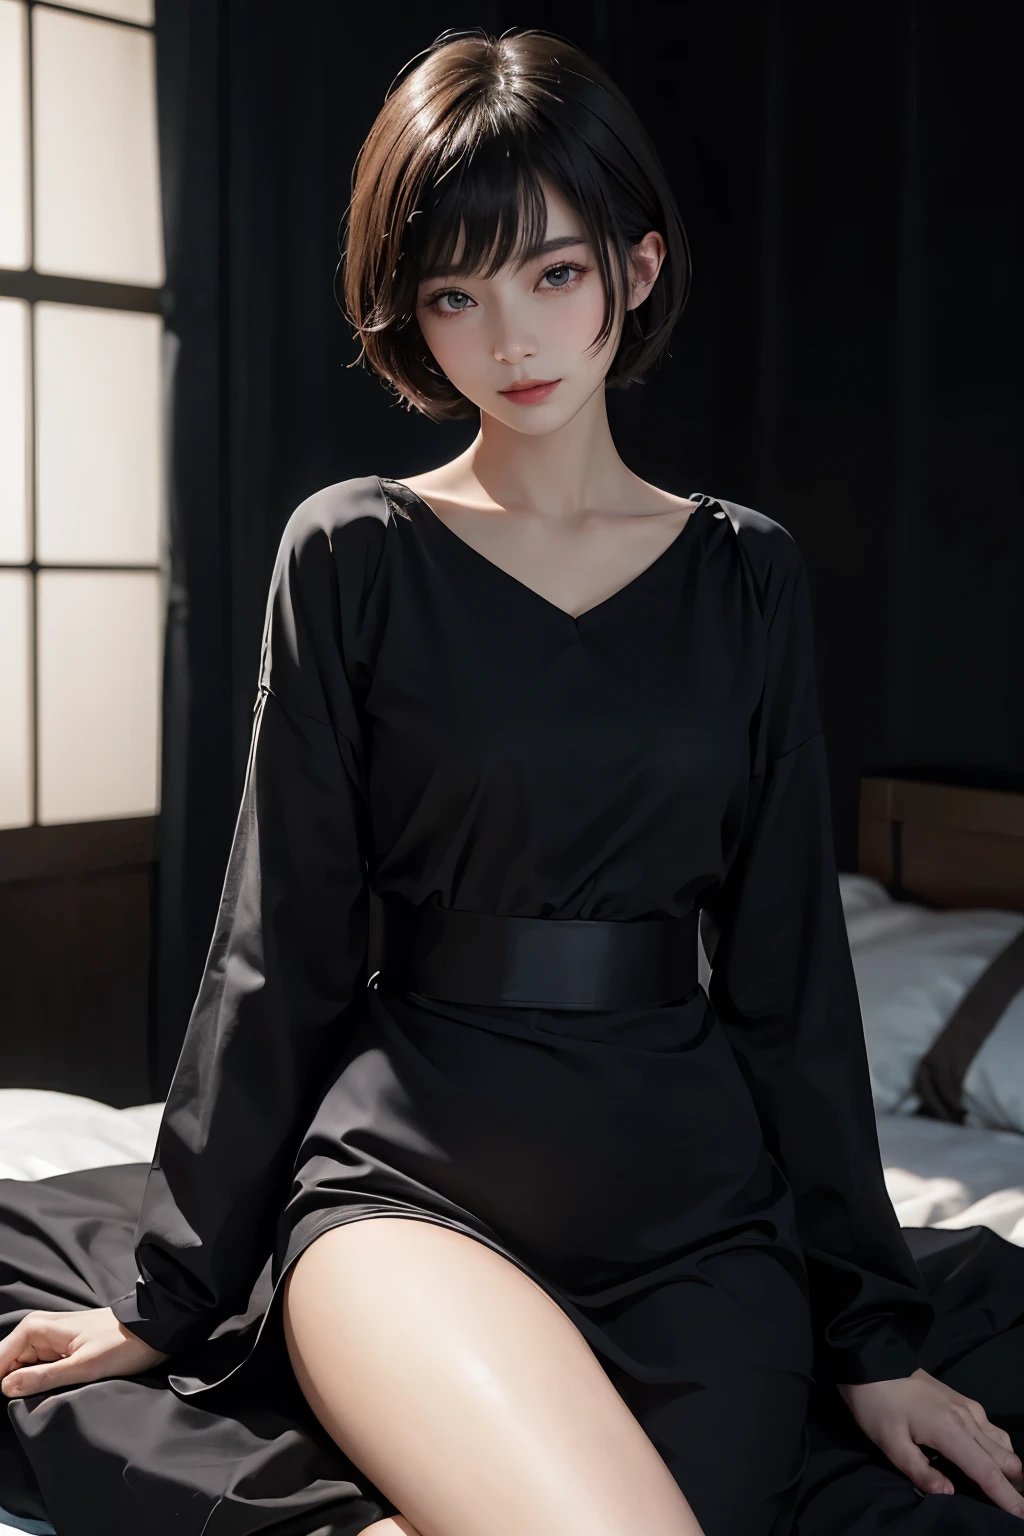 야경이 보이는 미래지향적인 객실、밤의 조용한 시간、세련된 흑백 방에서 쉬고 있는 아름다운 여성、위쪽을 봐, 눈을 감고 미소 지으세요、살짝 열린 입술、짧은 머리、아름다운 일본 여배우 잠옷、(진짜、フォト진짜)、아름다운 일본 여배우、짧은 머리、사키미 찬、시네마 라이트， 진짜isticlying， 최고의 품질， 복잡한 CG，매우 상세한 얼굴，높은 디테일의 눈，